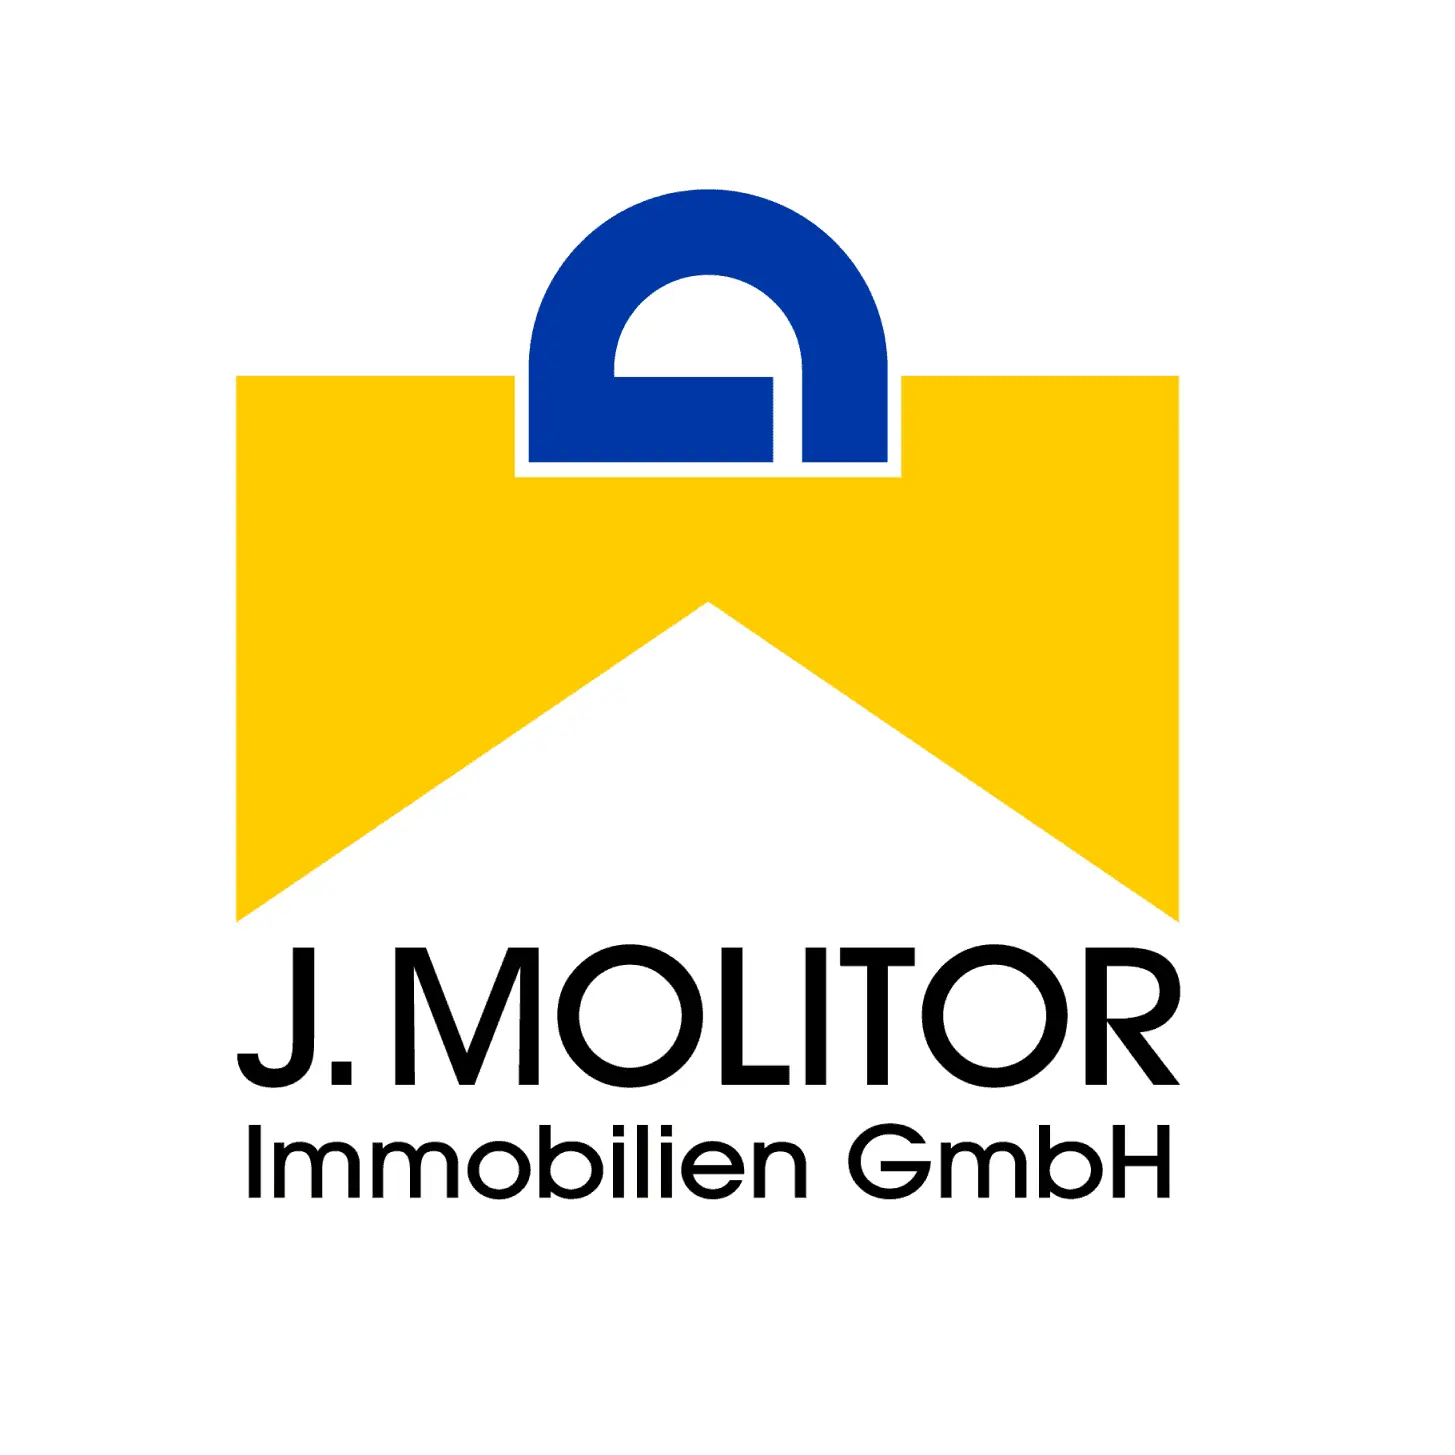 J. Molitor